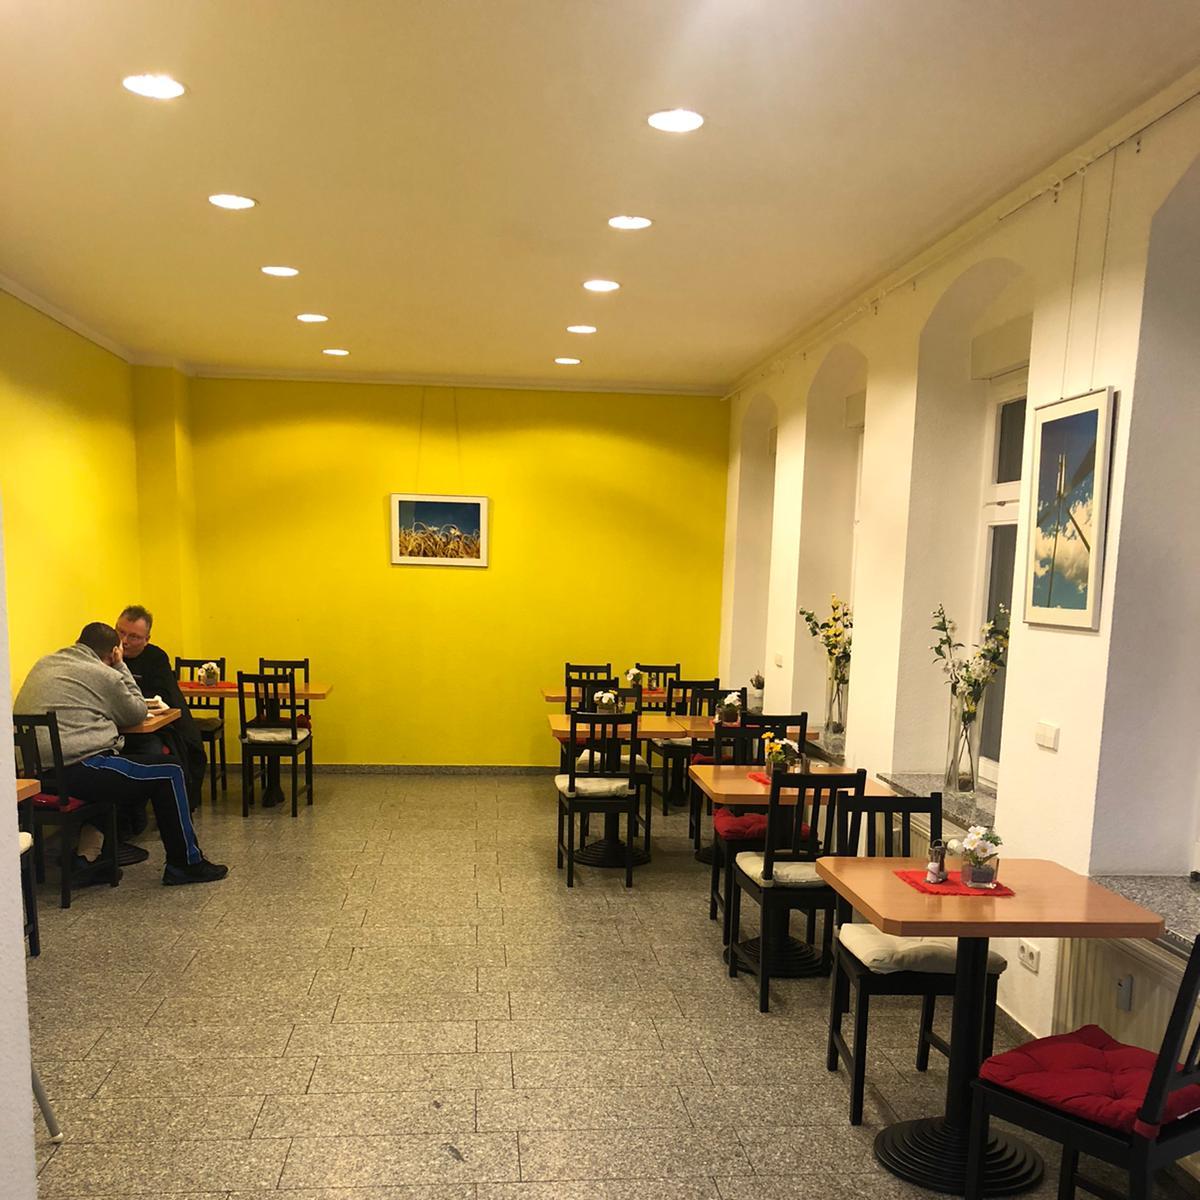 Restaurant "Ibo Döner" in Dresden